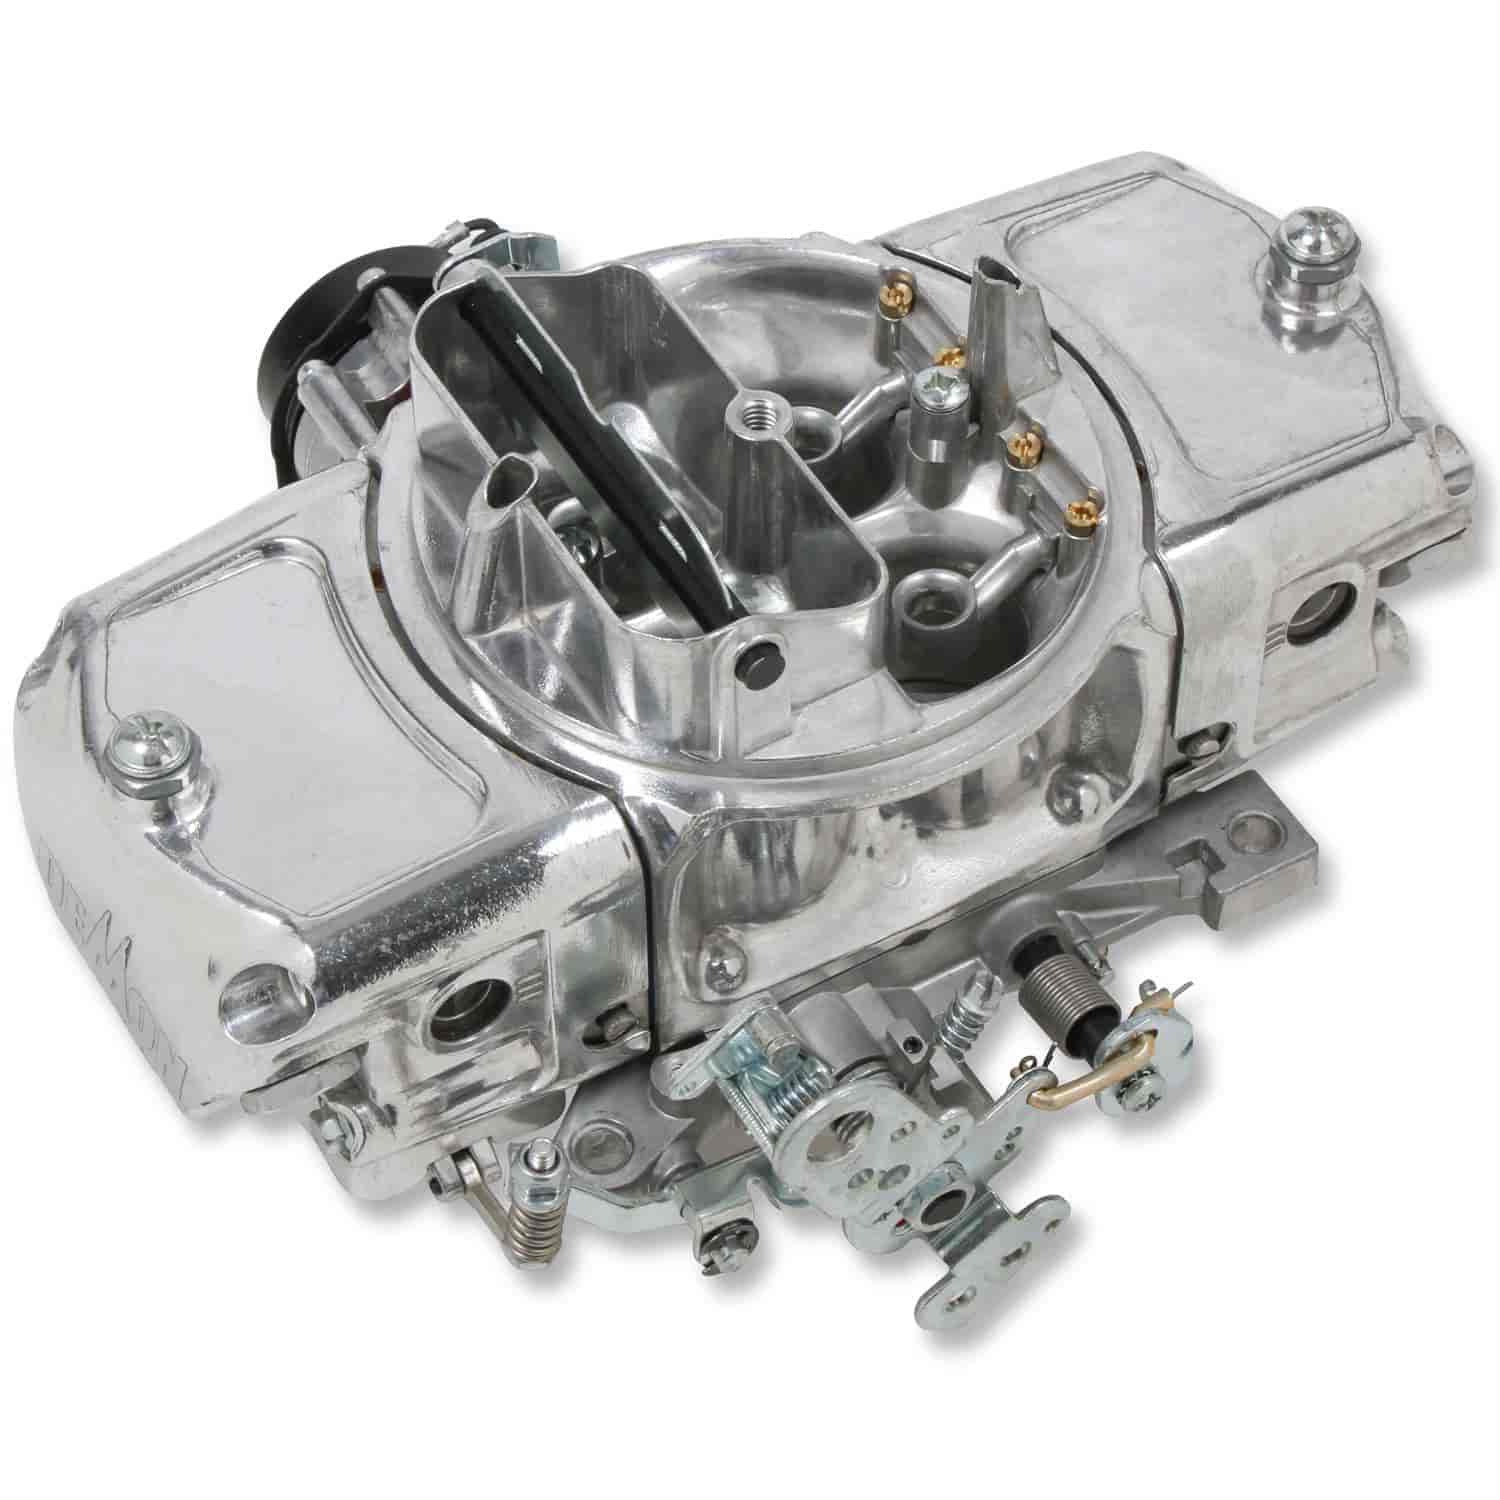 750 CFM Road Demon Carburetor [Electric Choke, Mechanical Secondaries]